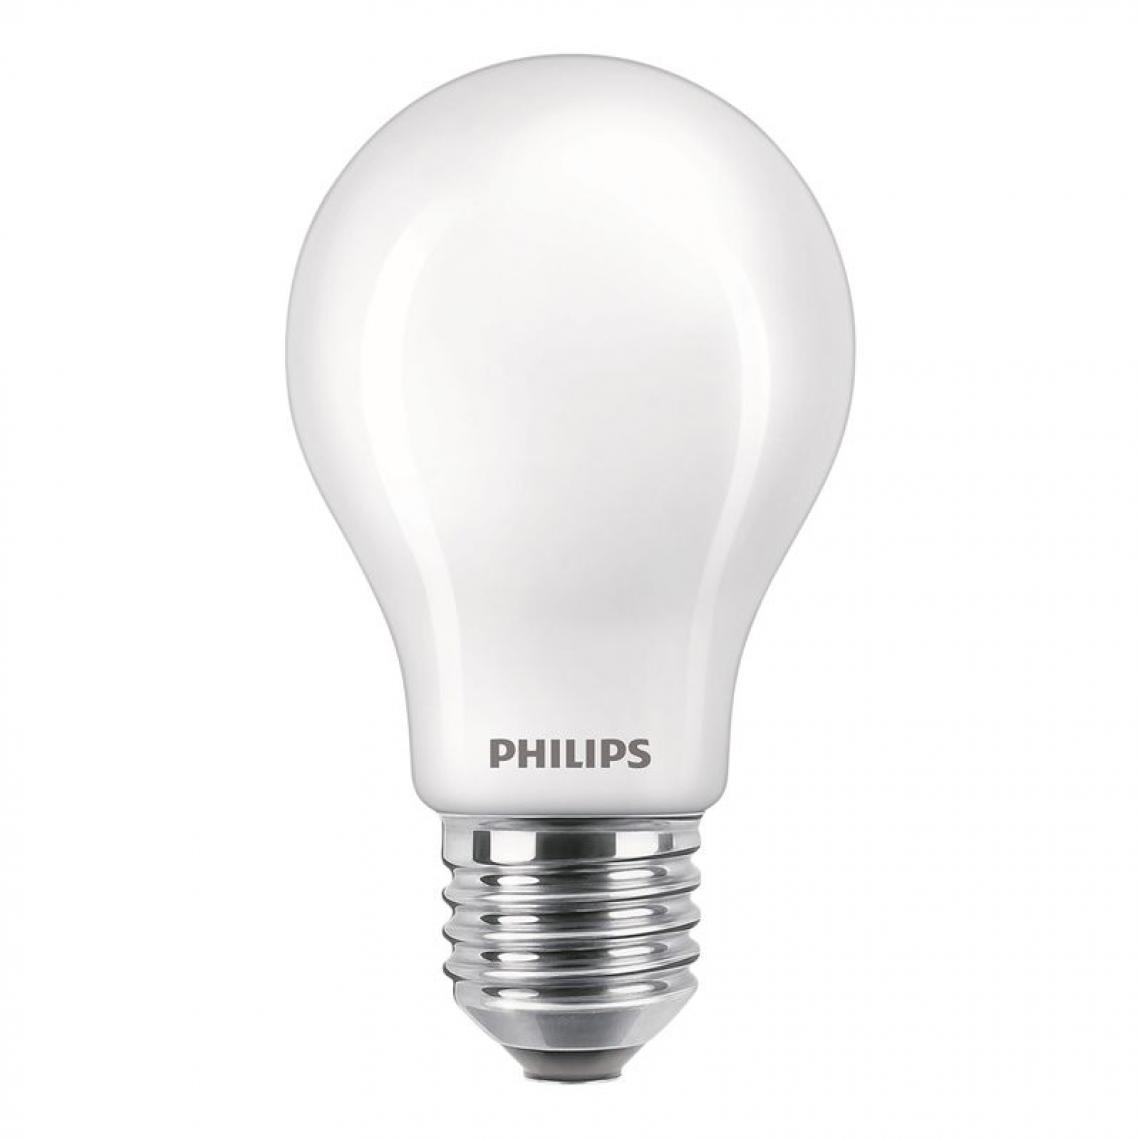 Philips - Lot de 2 ampoules LED standard E27 en verre EQ75W - Ampoules LED